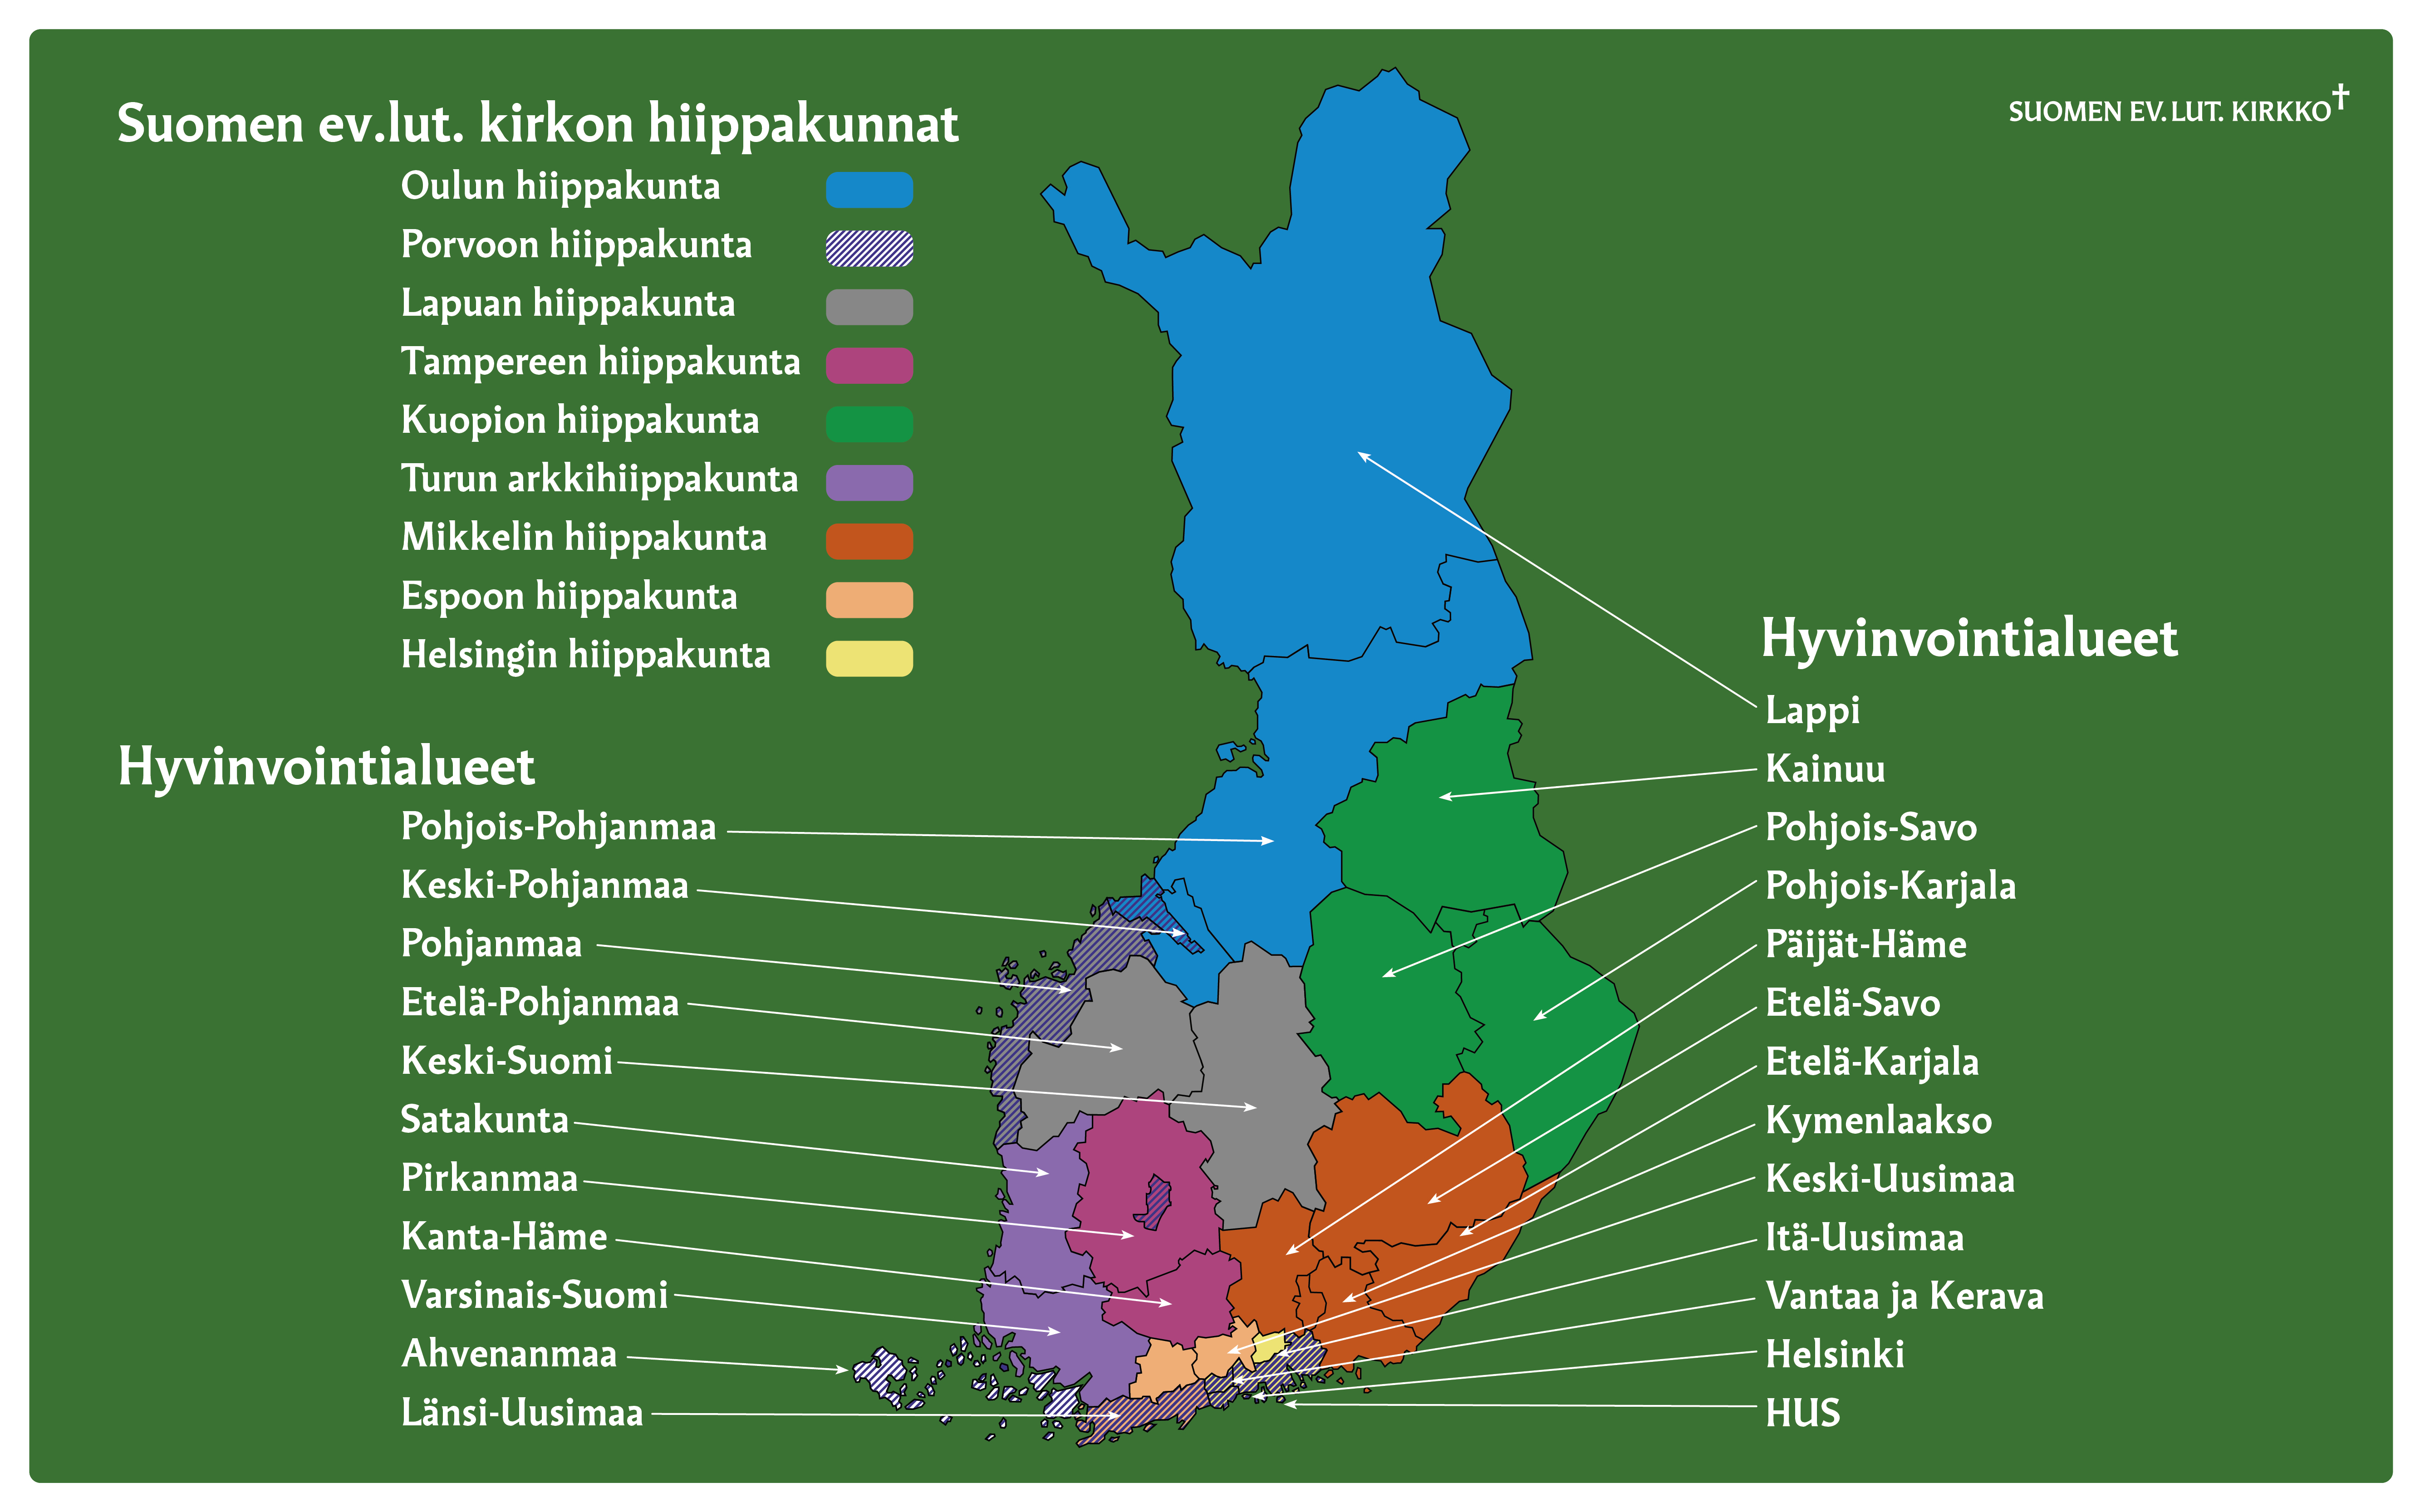 Hyvinvoitalueet ja hiippakunnat Suomen kartalla.